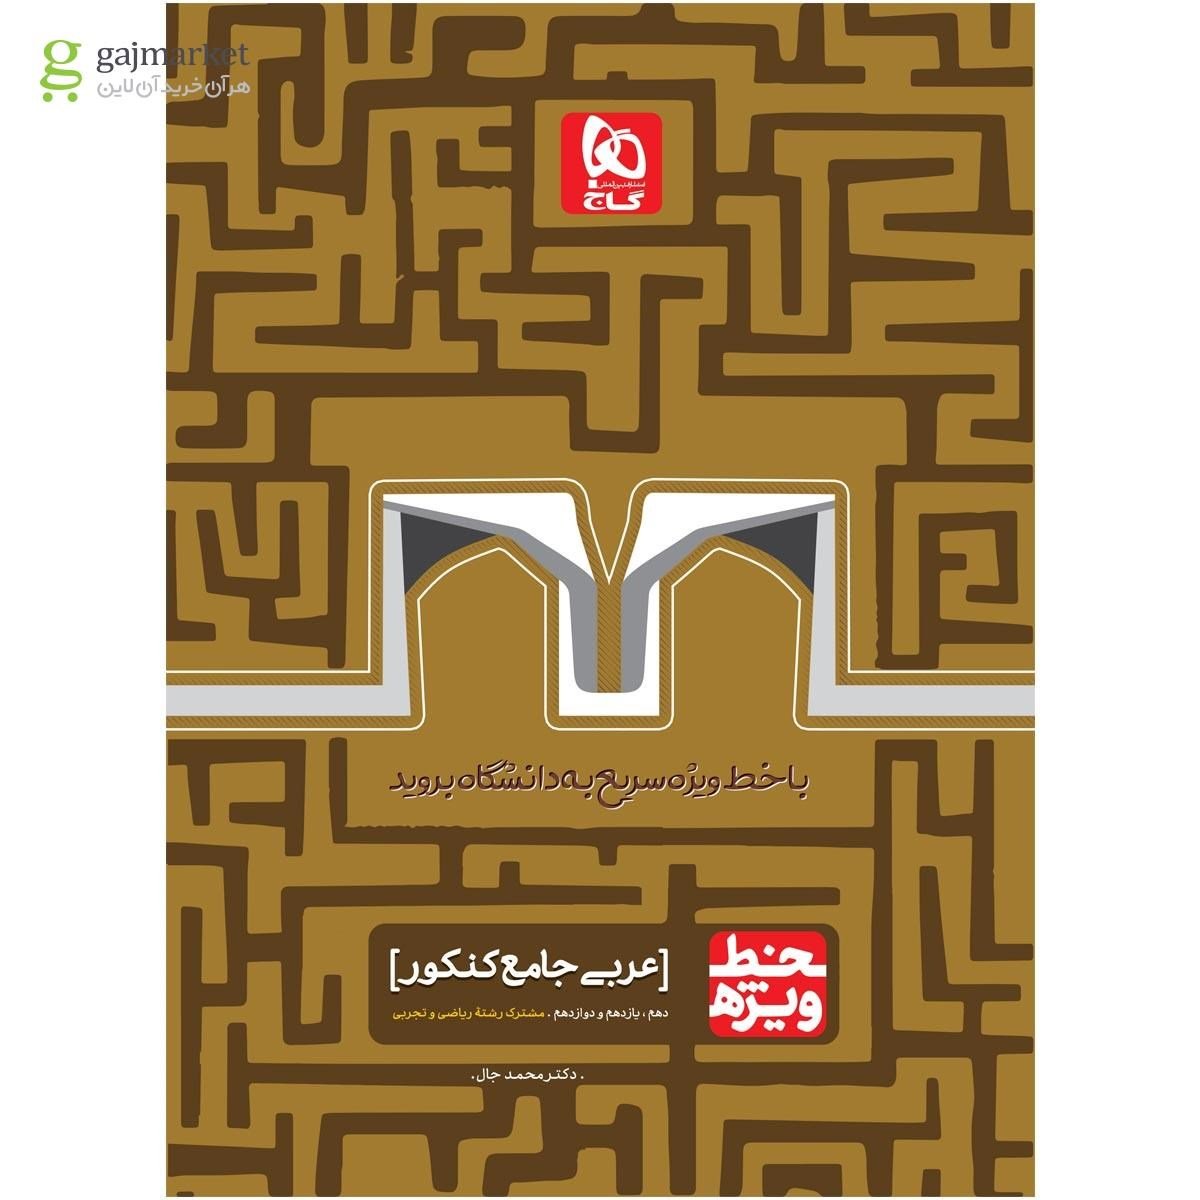 بهترین کتاب جمع بندی عربی چیست؟